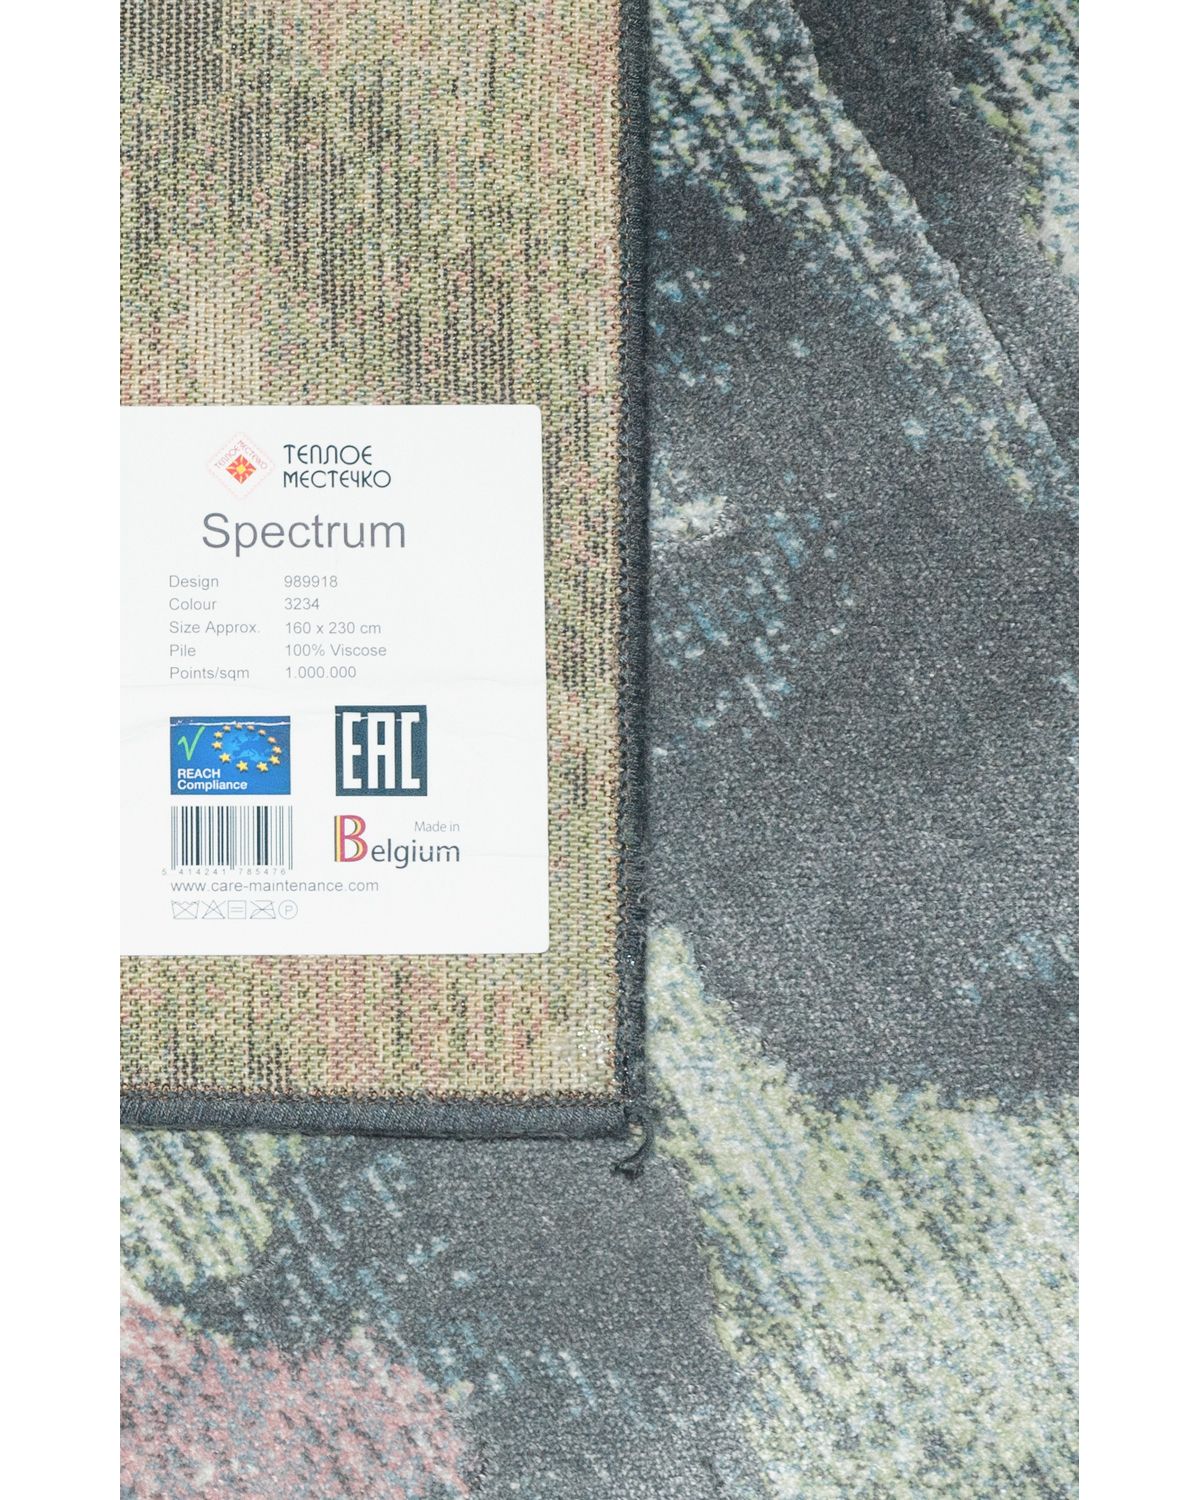 ковер spectrum 89918 3234 green